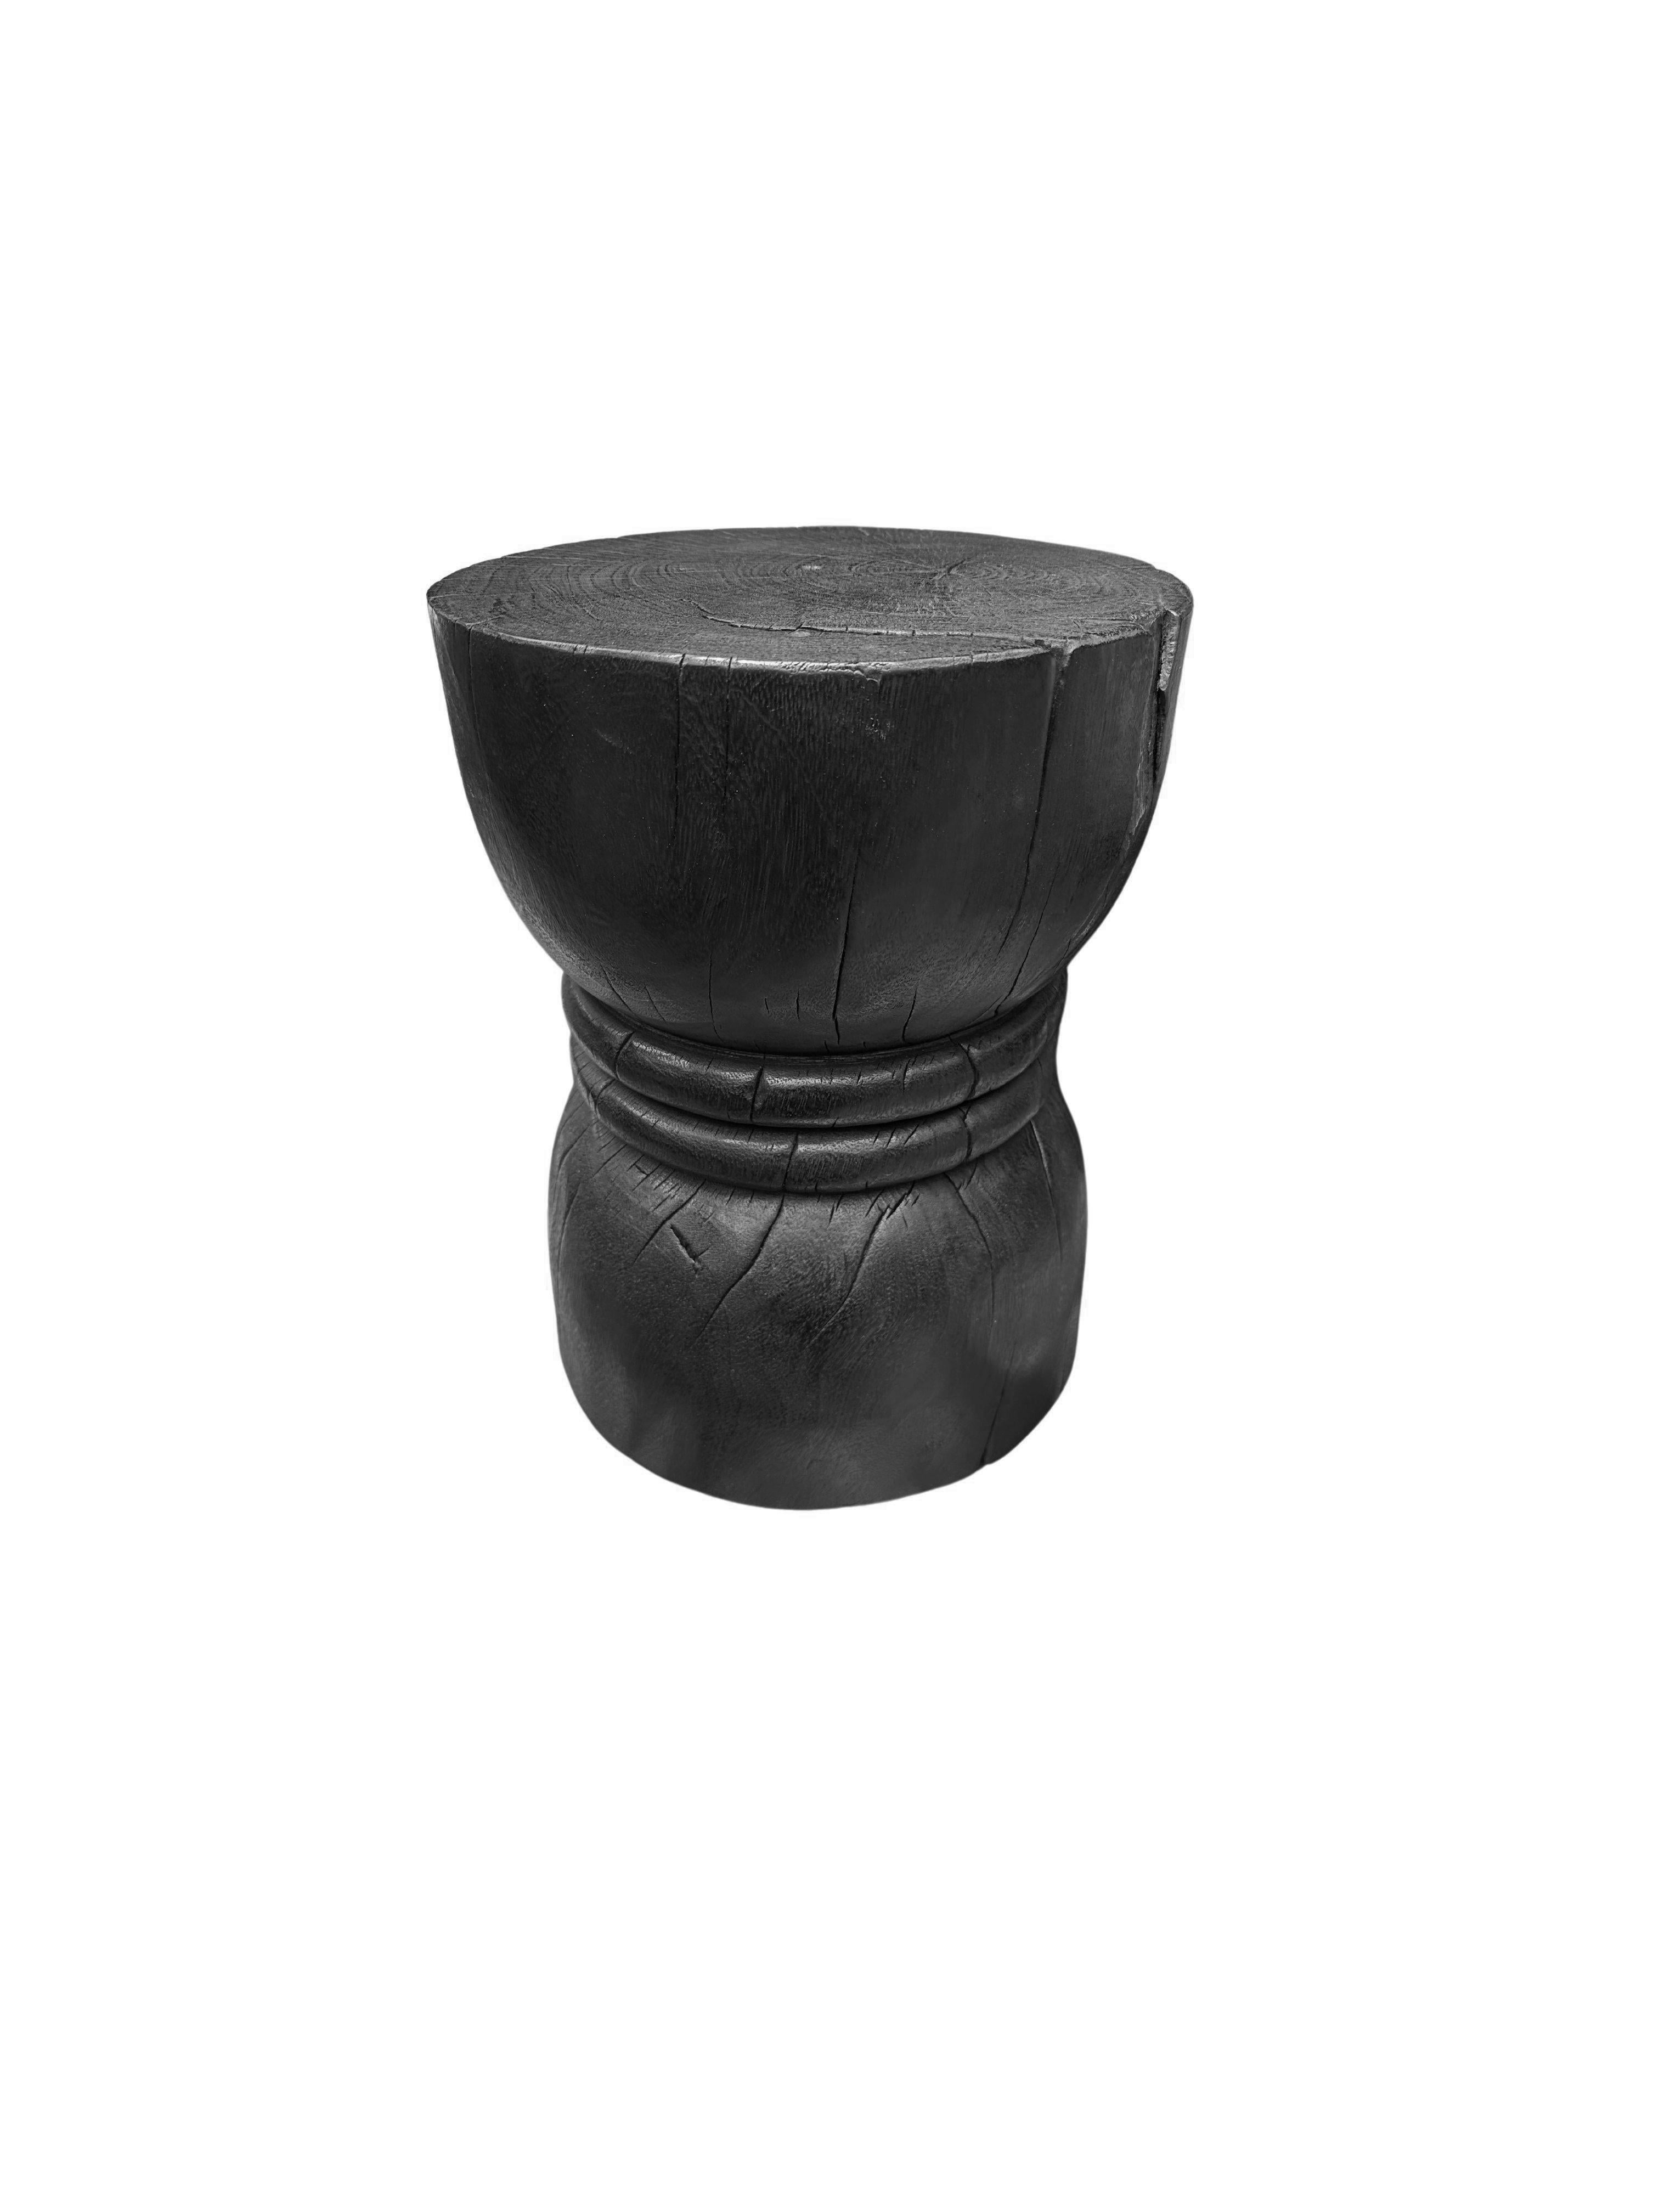 Dieser wunderbar skulpturale runde Beistelltisch hat eine gebrannte Oberfläche, die dem Holz einen kräftigen schwarzen Ton verleiht. Das Äußere wurde mehrfach gebrannt und mit einem Klarlack überzogen. Die neutrale Farbgebung des Tisches macht ihn